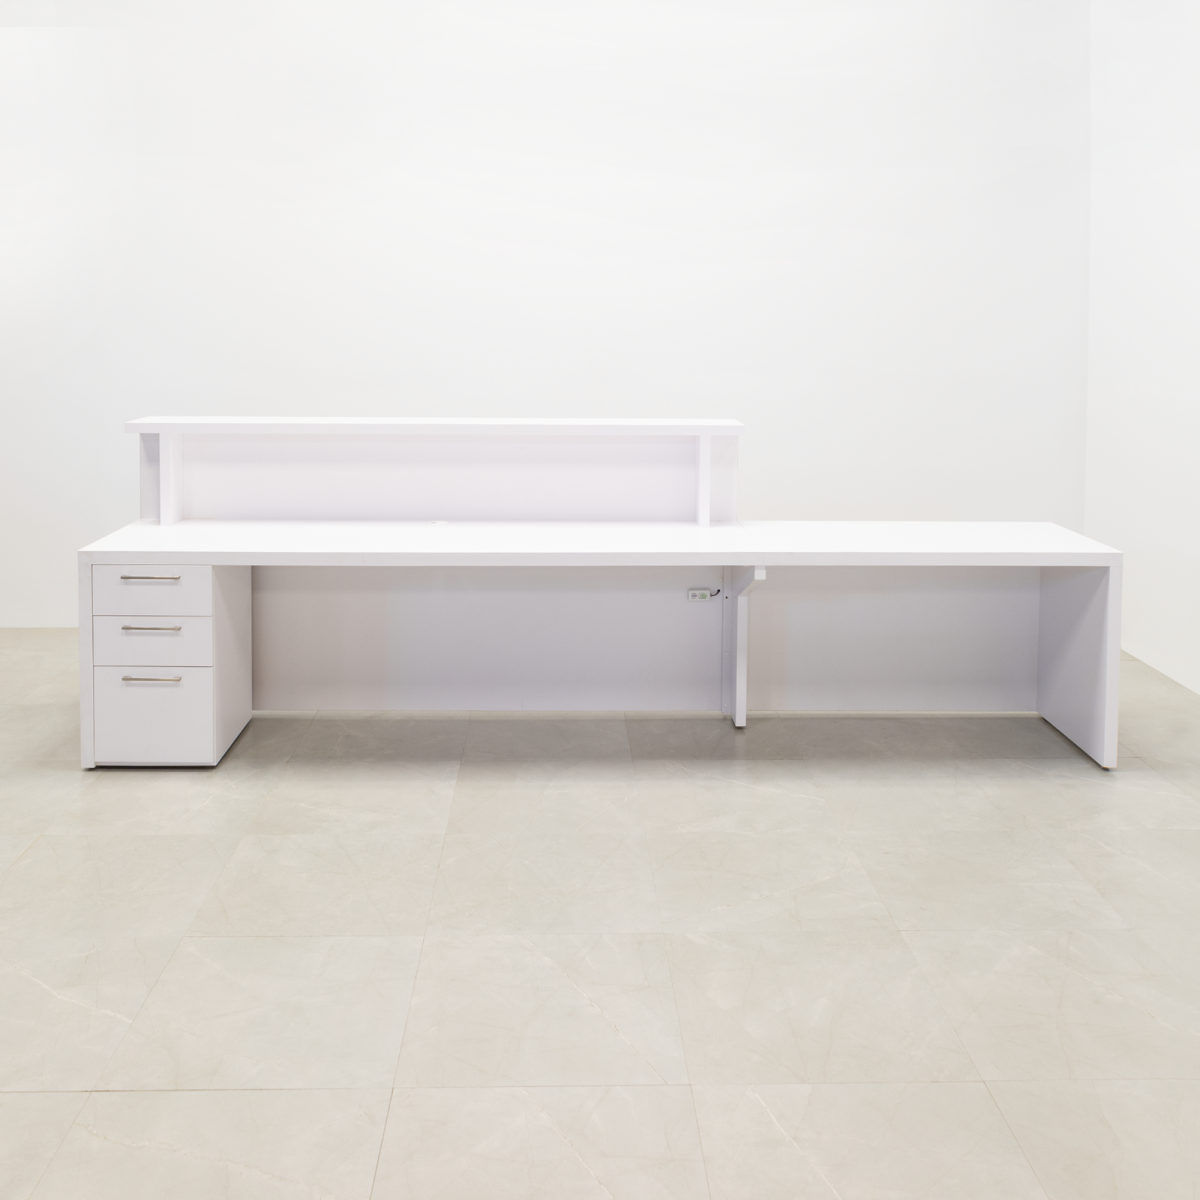 LA Long Reception Desk in White Matte Laminate with Storage